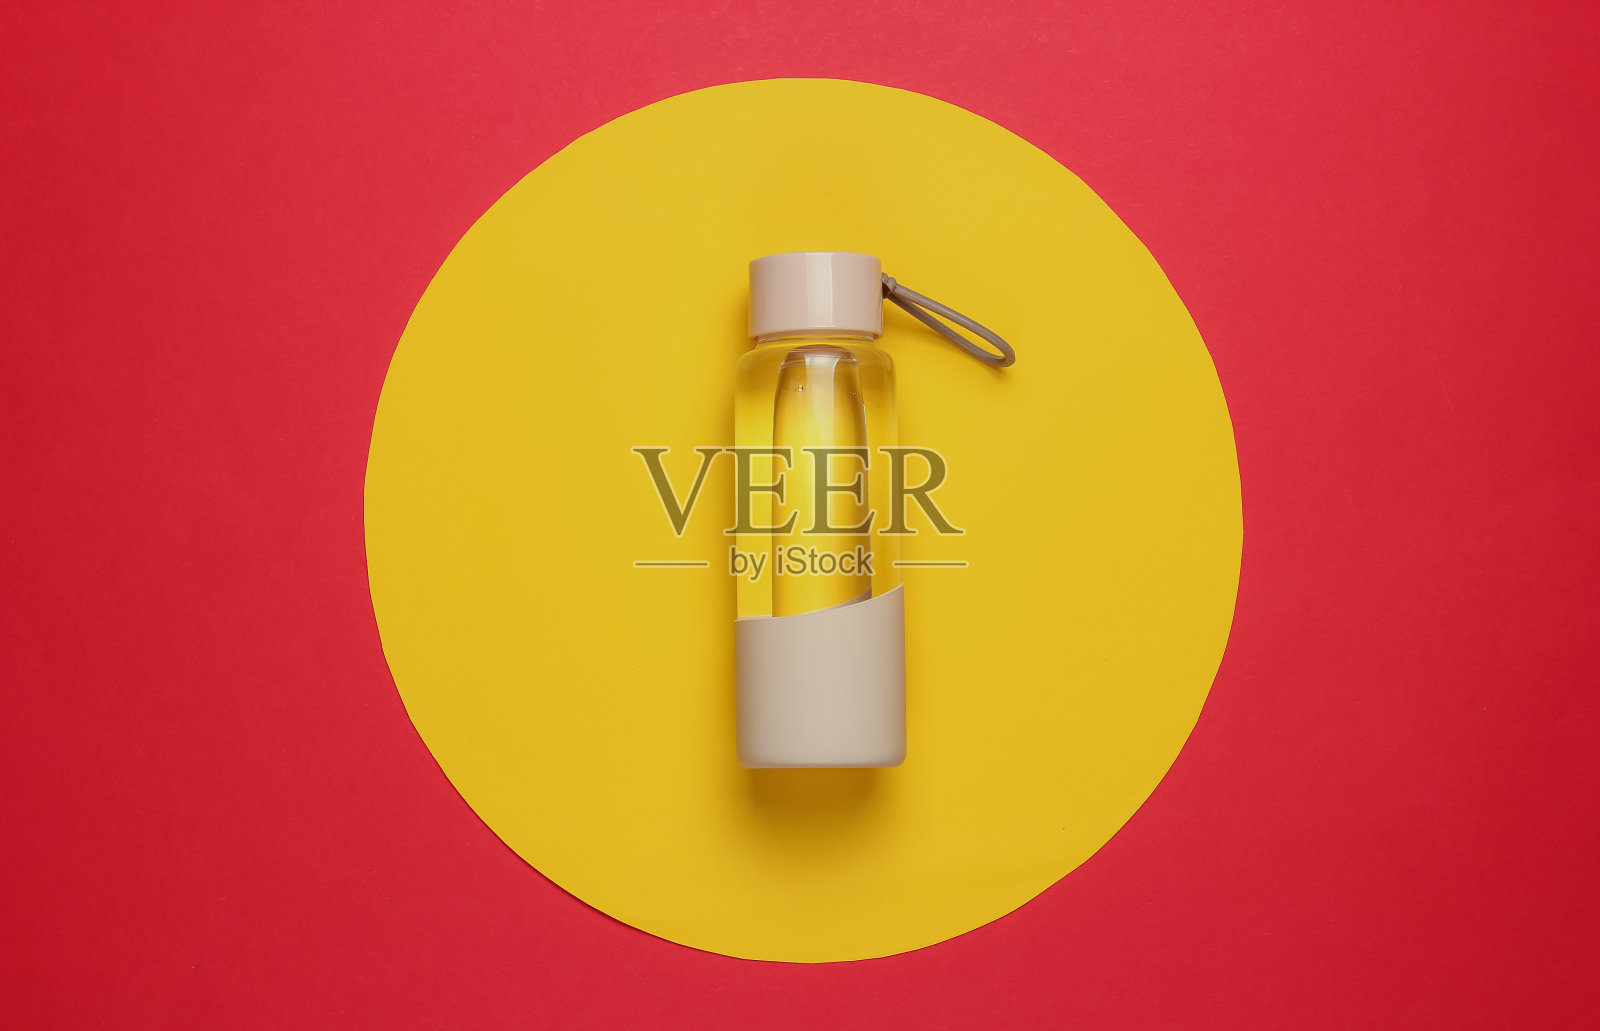 瓶装水用于运动和户外活动的红黄圈背景。俯视图照片摄影图片